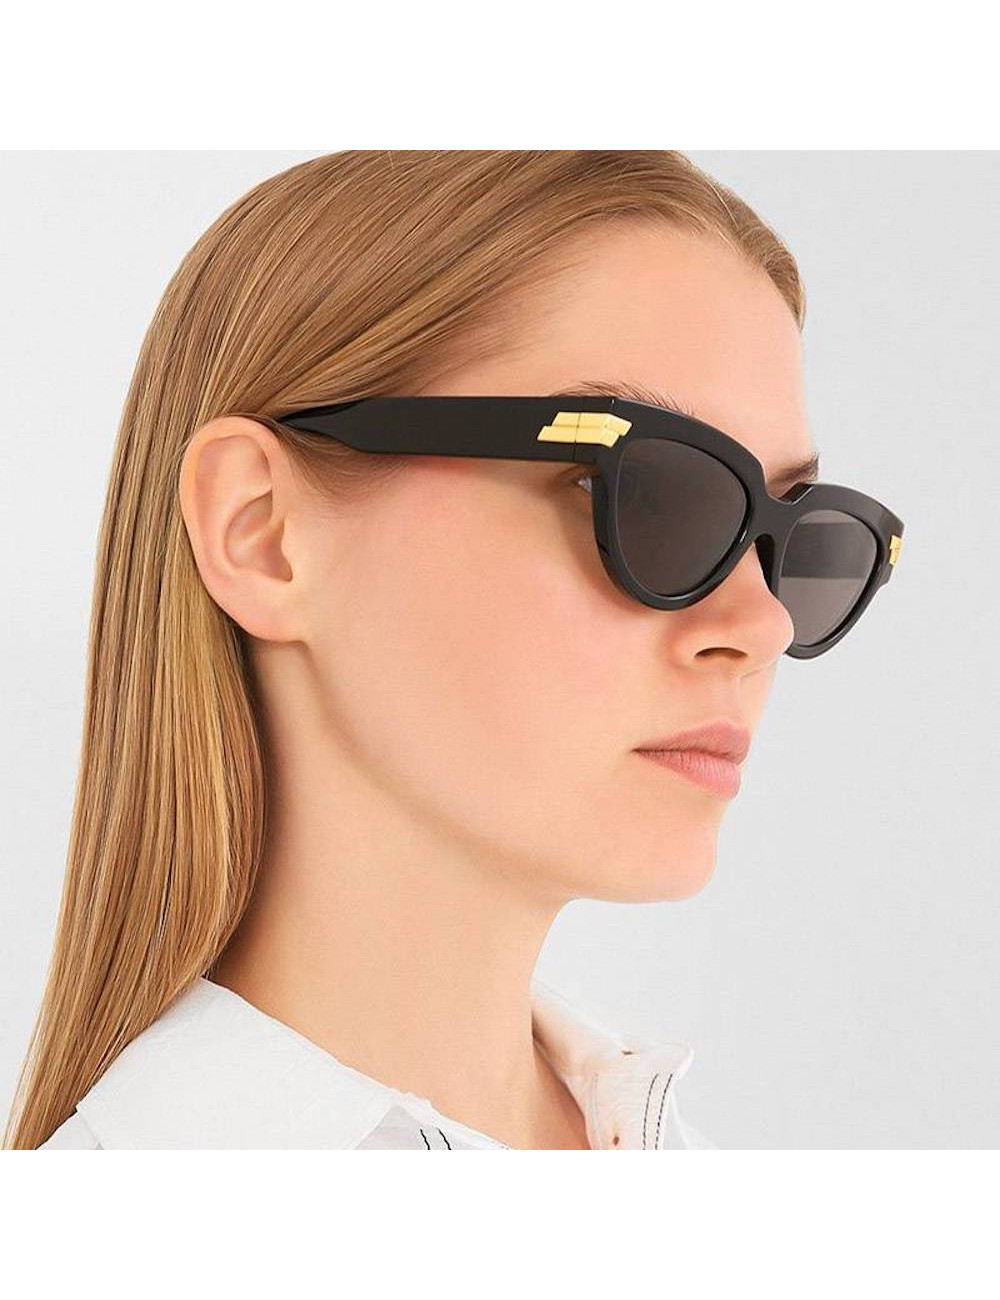 Bottega Veneta Women's BV1035S Cat Eye Sunglasses